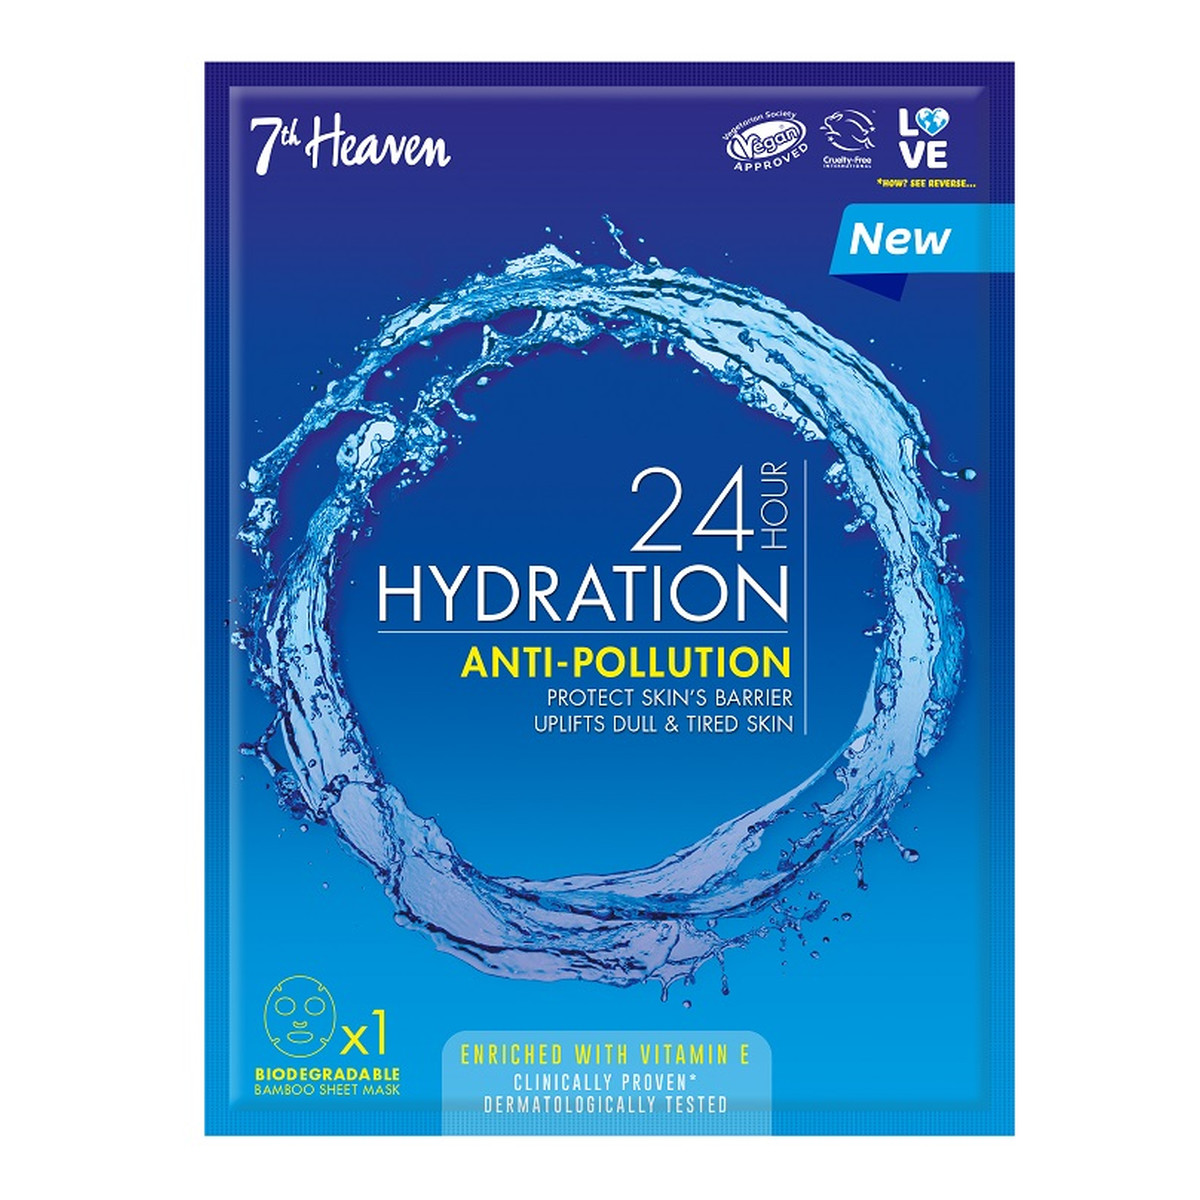 7th Heaven 24H Hour Hydration Anti-Pollution ultranawilżająca maseczka w płachcie przeciw zanieczyszczeniom